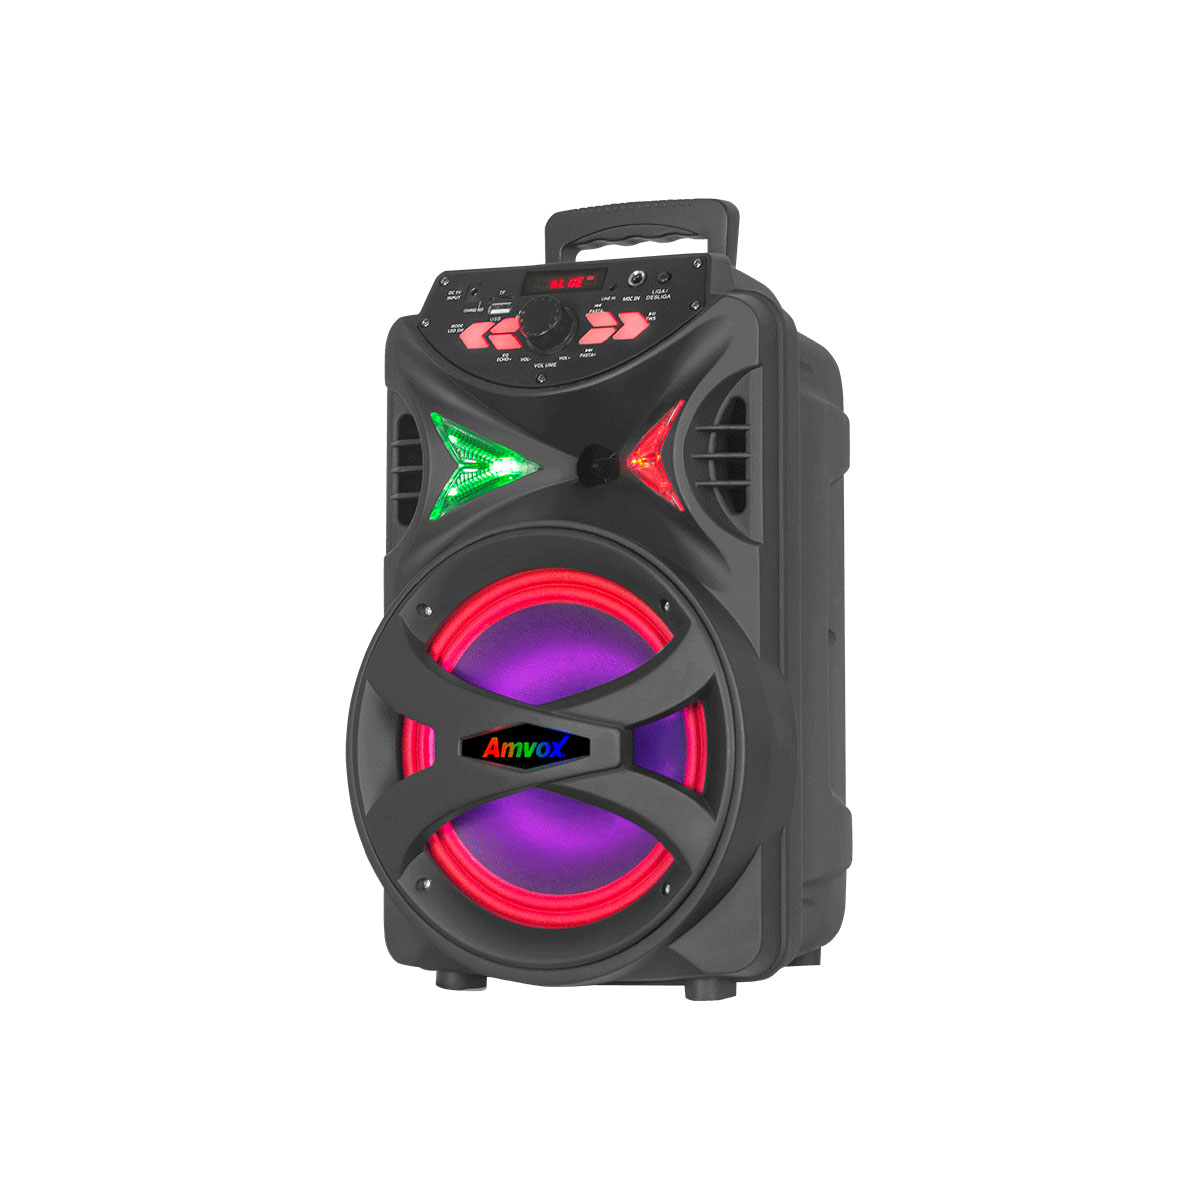 Caixa de Som Portátil Amvox Hit - Bluetooth - Iluminação LED - 250W RMS - Bivolt - Bateria 4 horas - ACA 255